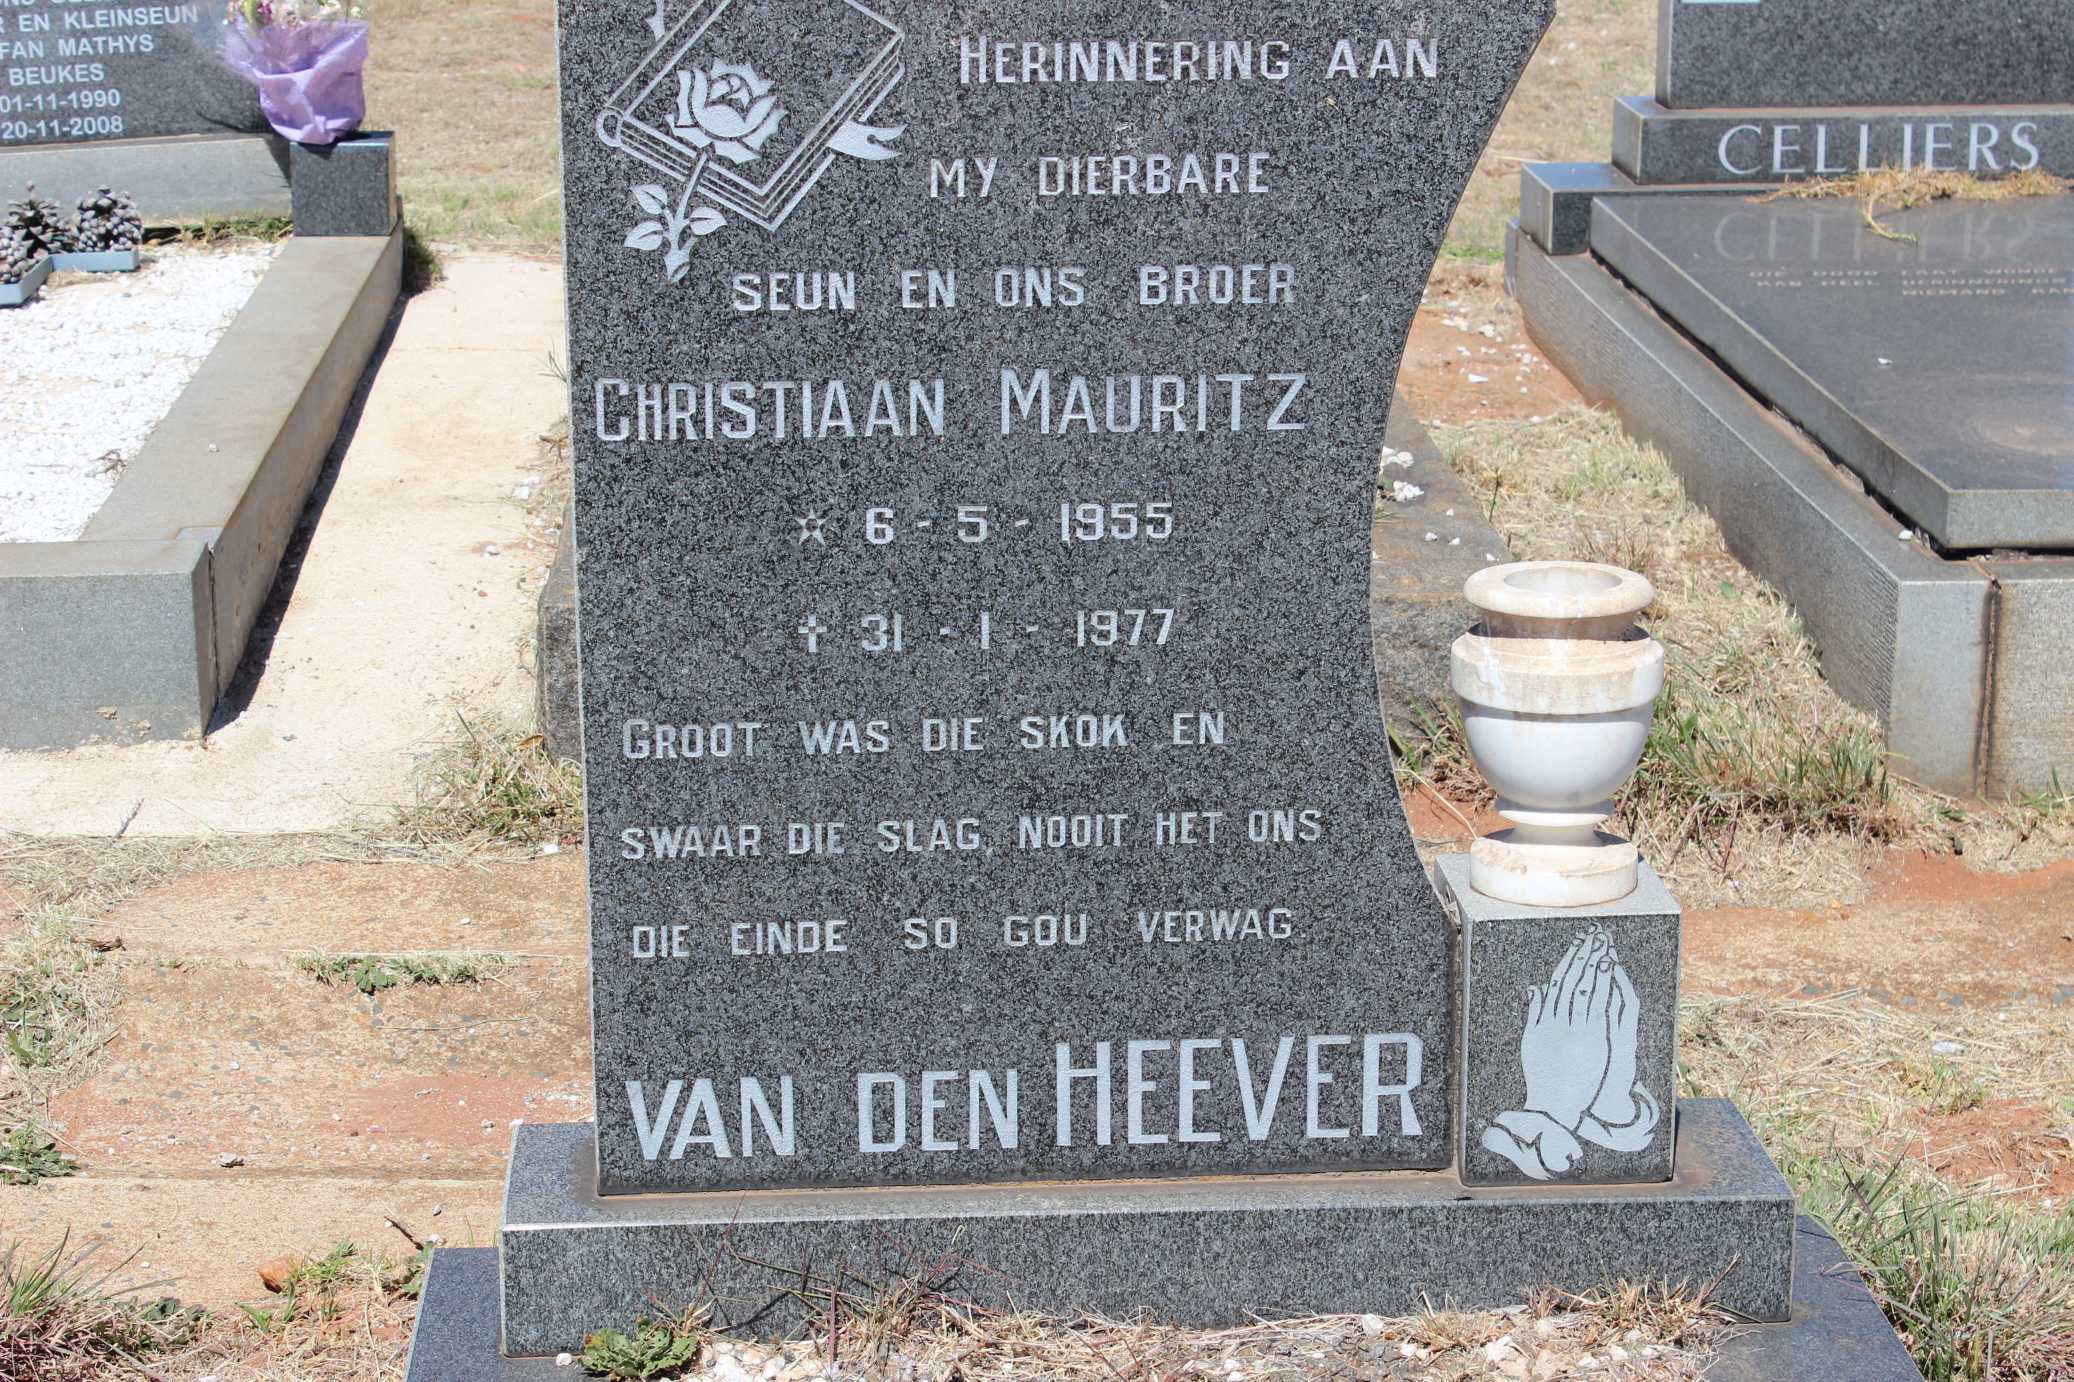 HEEVER Christiaan Mauritz, van den 1955-1977